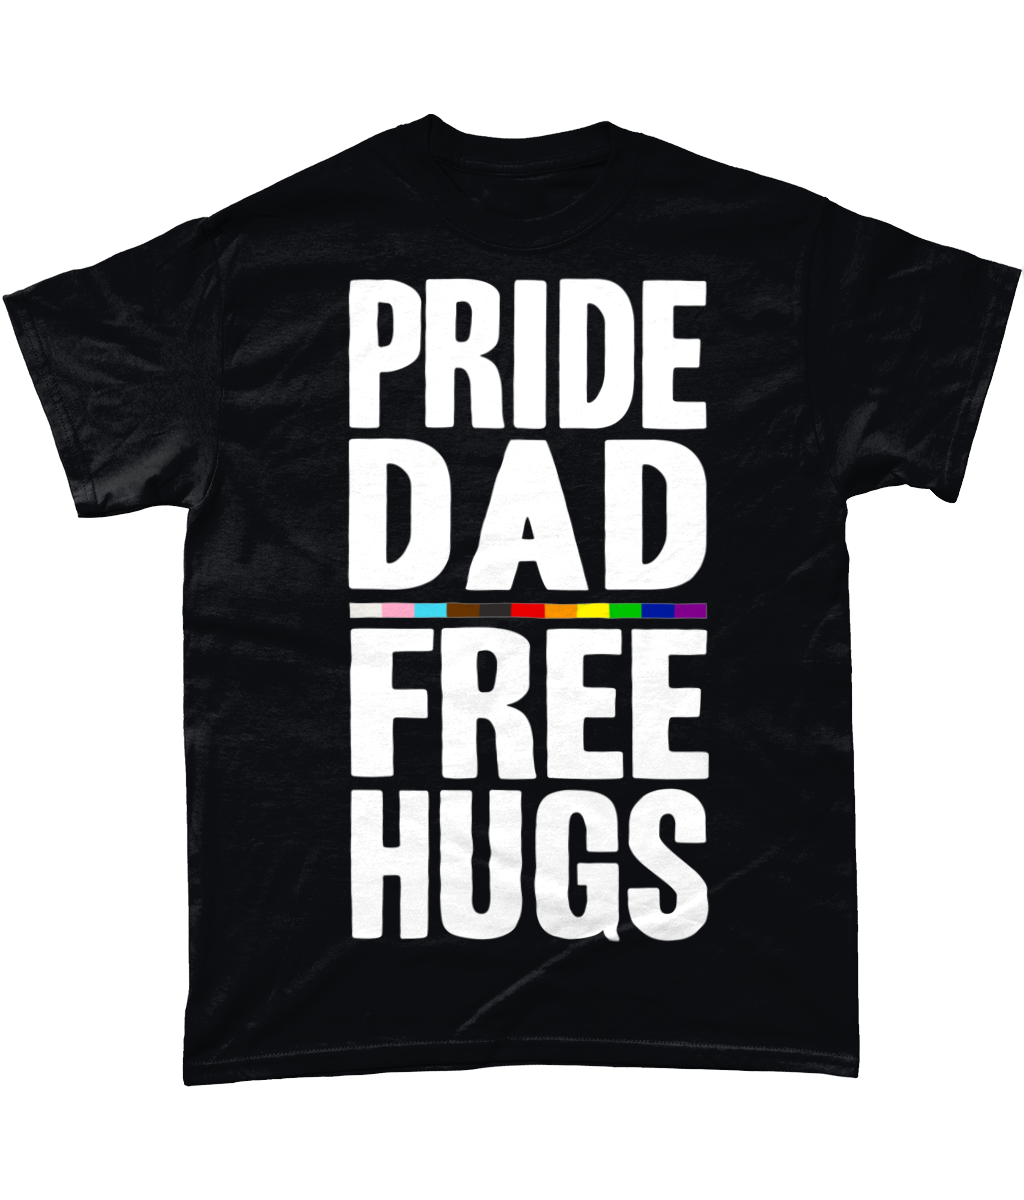 PRIDE DAD t-shirt S-5XL